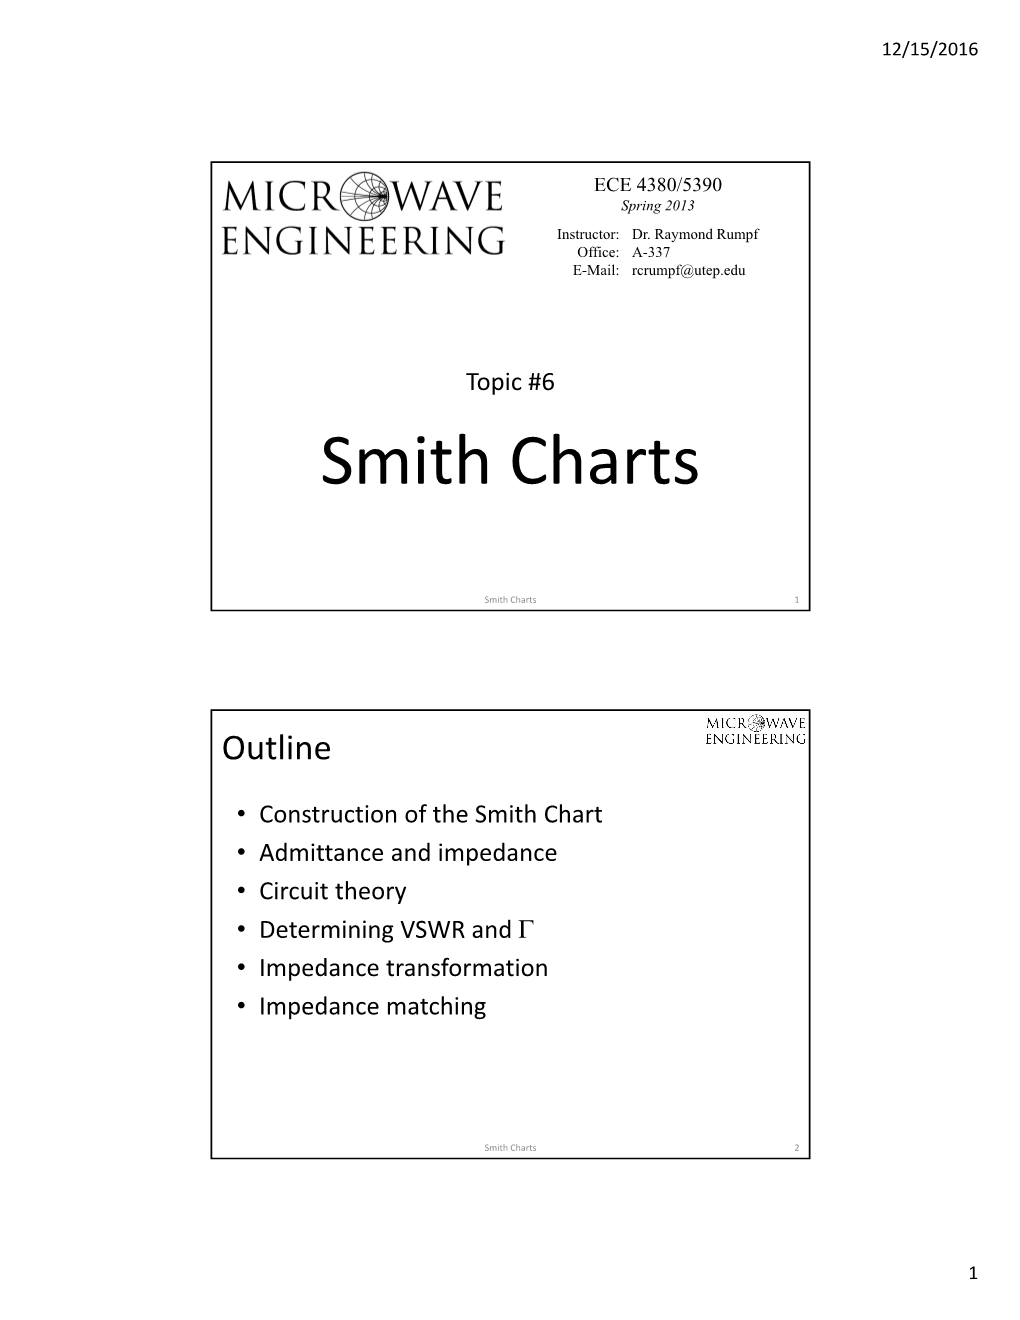 Smith Charts